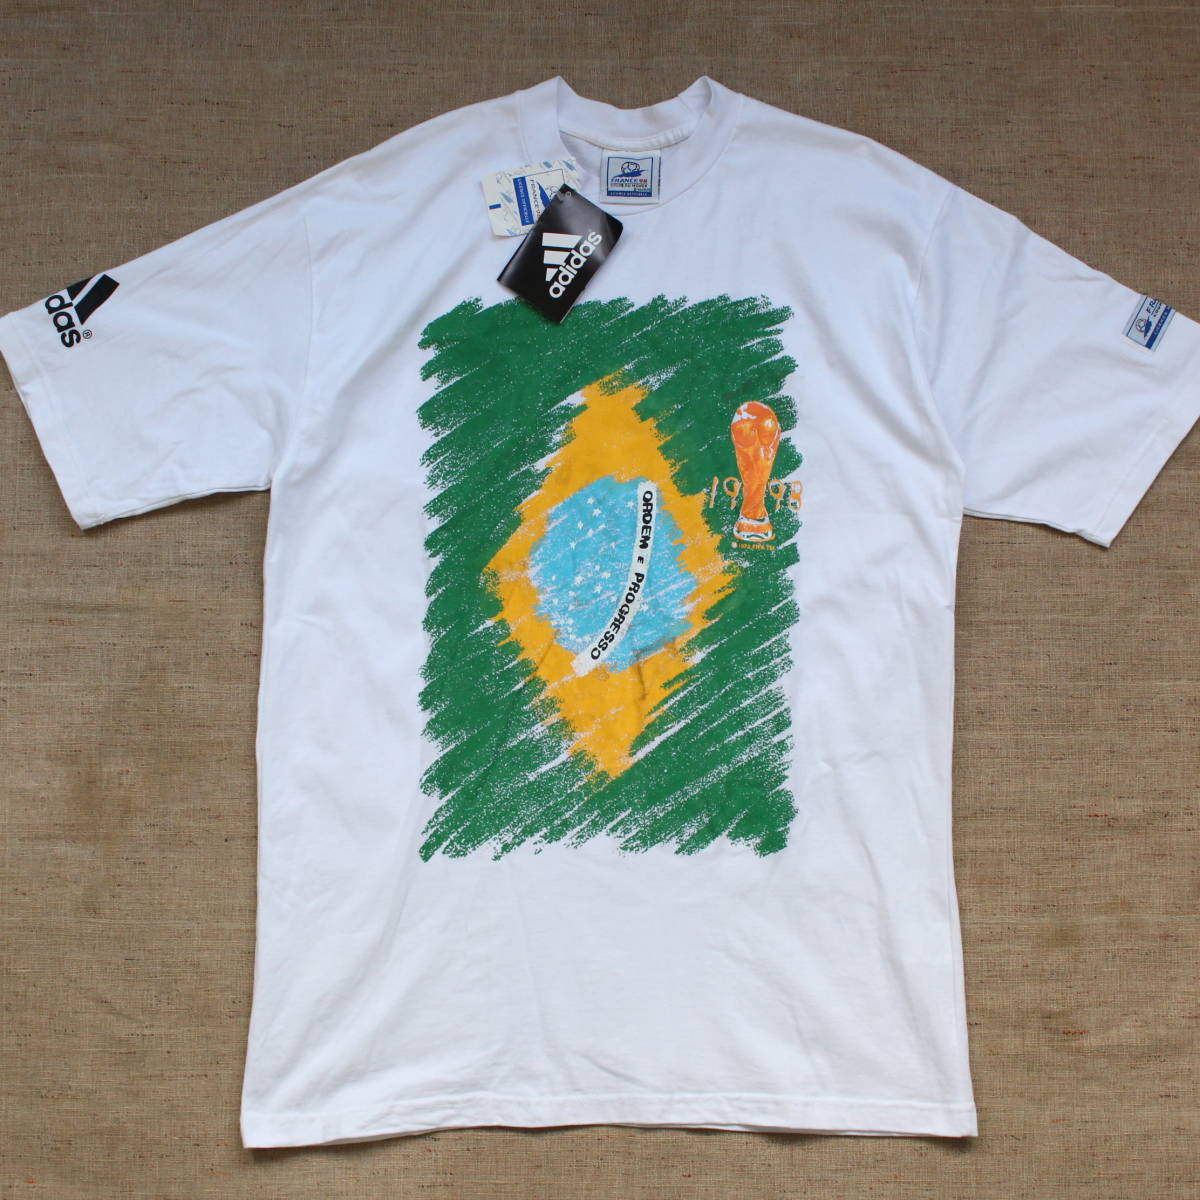 1998年 FIFAワールドカップ W杯フランス大会 adidas Tシャツ 優勝 フットボール サッカー UEFA 公式 ヴィンテージ ブラジル ファヴェーラ